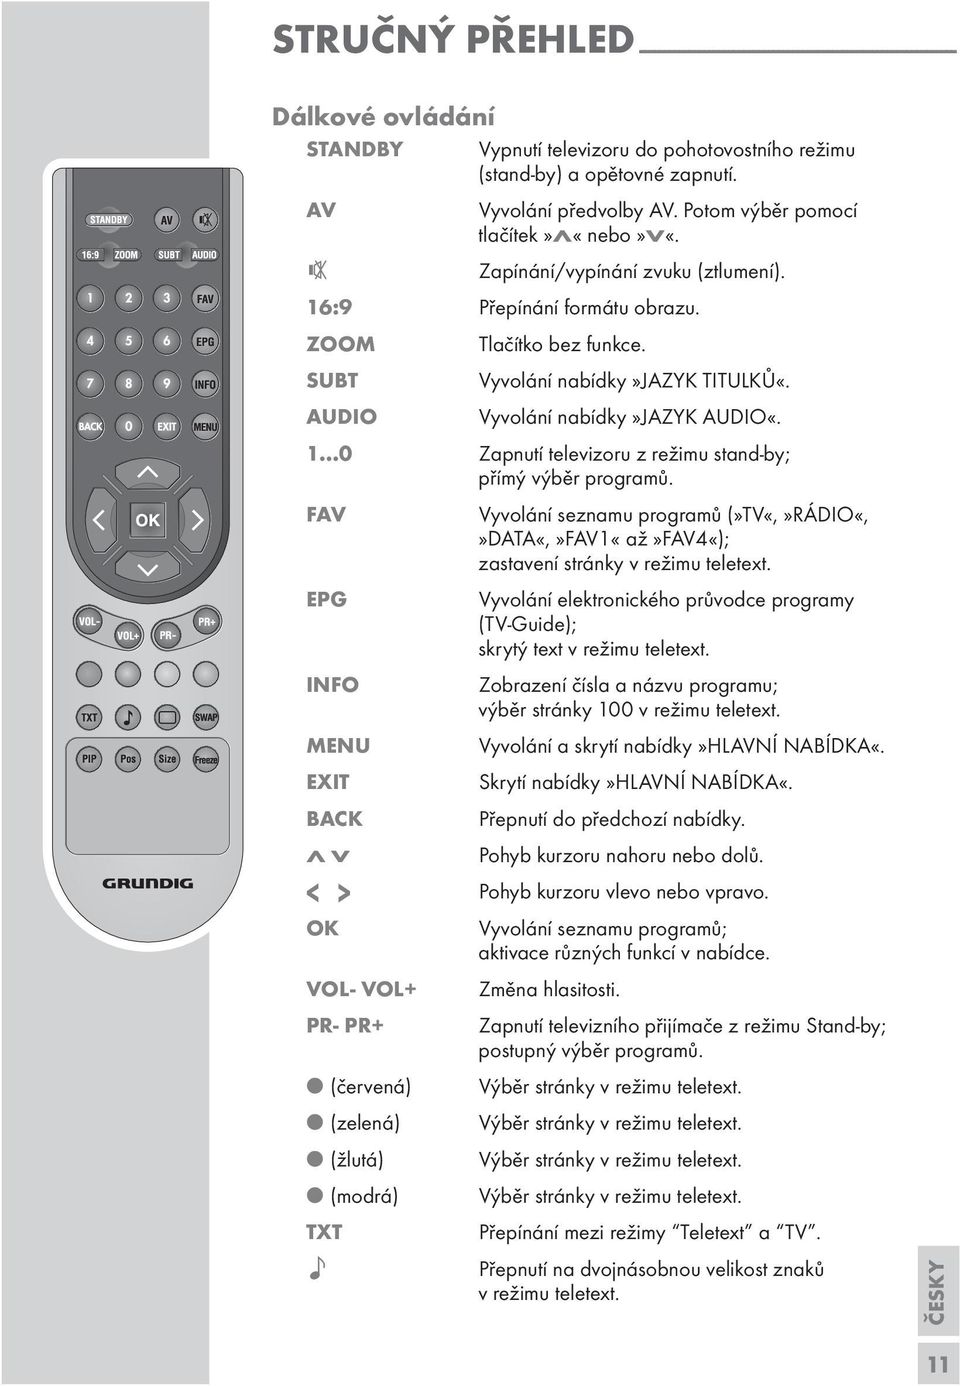 AUDIO yvolání nabídky»jazyk AUDIO«. 1 0 Zapnutí televizoru z režimu stand-by; přímý výběr programů. FA yvolání seznamu programů (»T«,»RÁDIO«,»DATA«,»FA1«až»FA4«); zastavení stránky v režimu teletext.